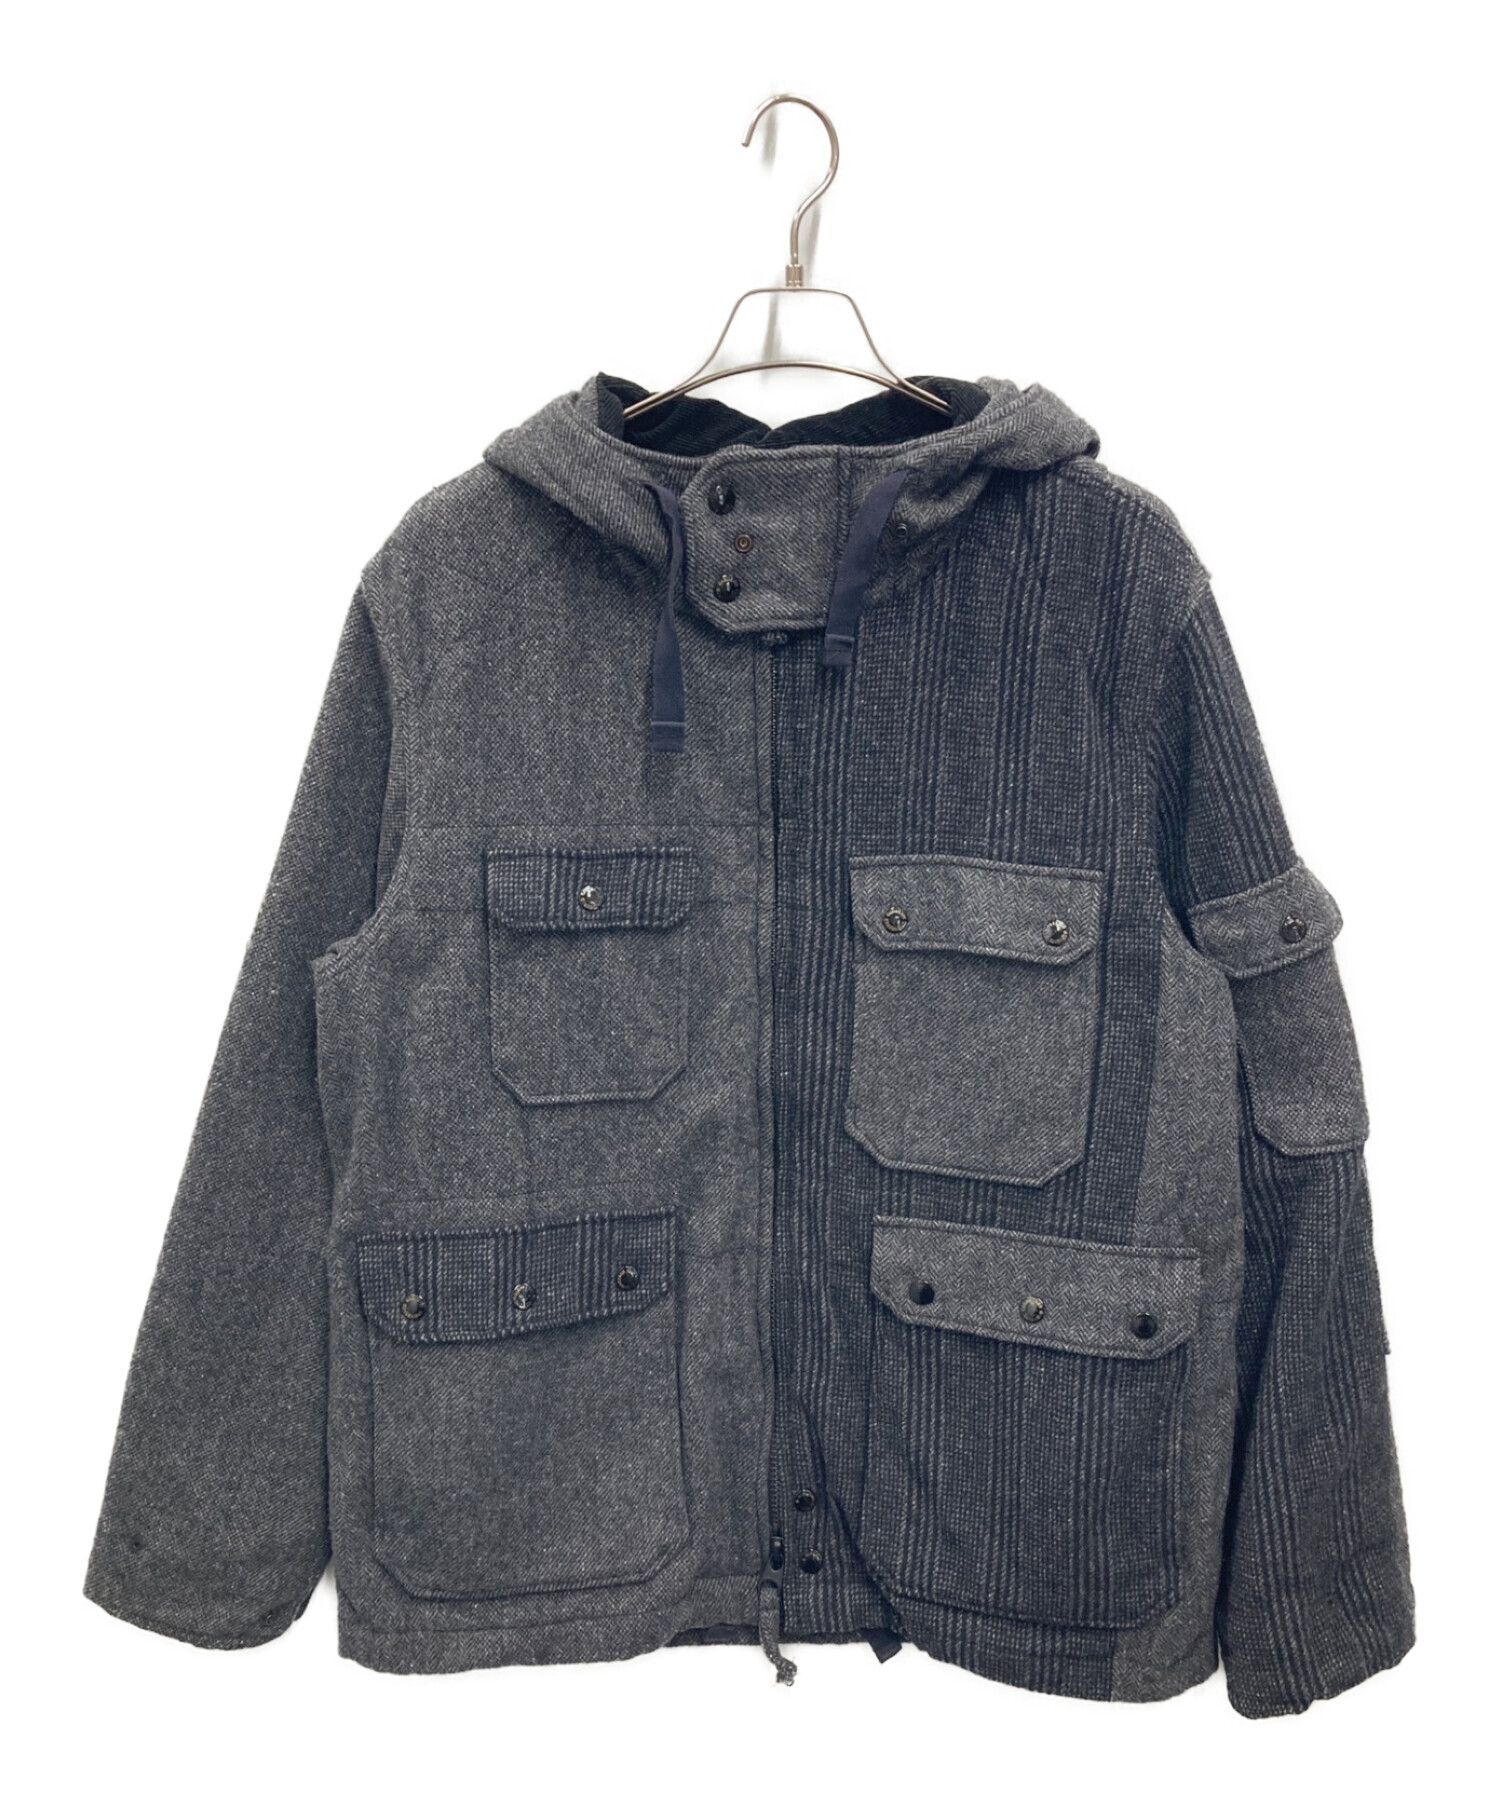 Engineered garments クルーザージャケット22年の冬に購入し数回着用